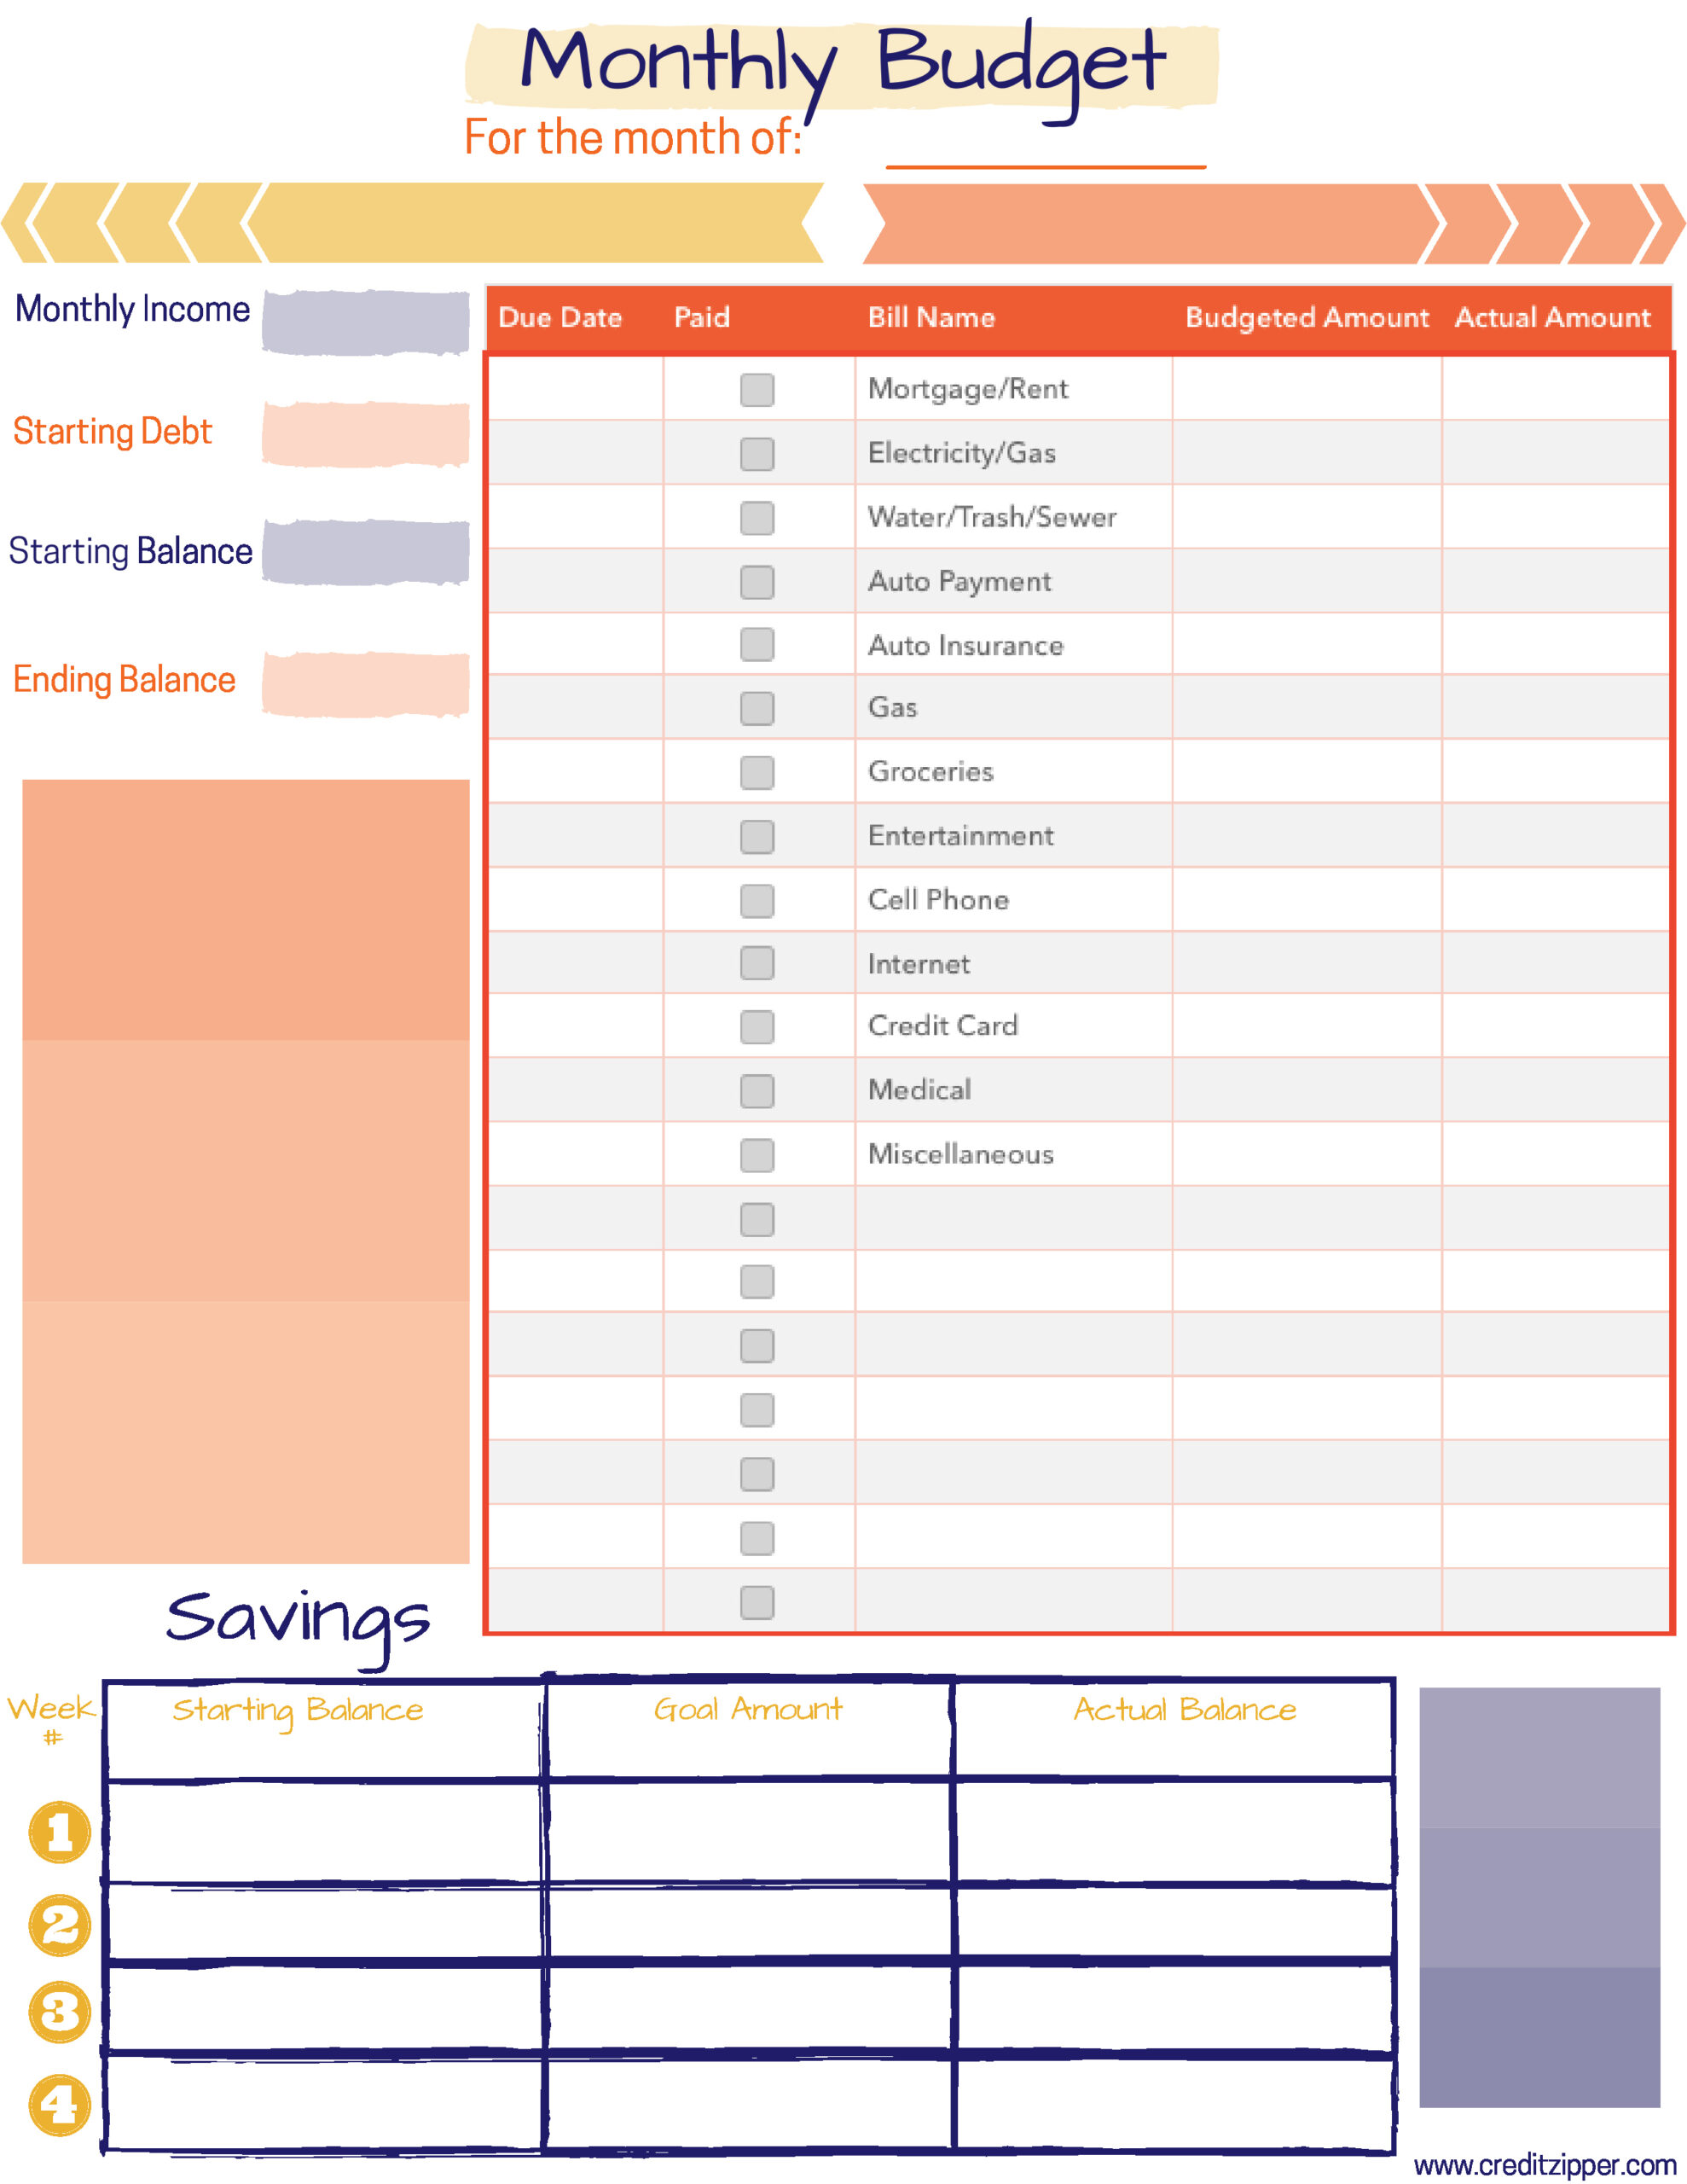 Free Monthly Budget Planner Printable  Credit Zipper verwandt mit Budgetplaner Pdf Kostenlos